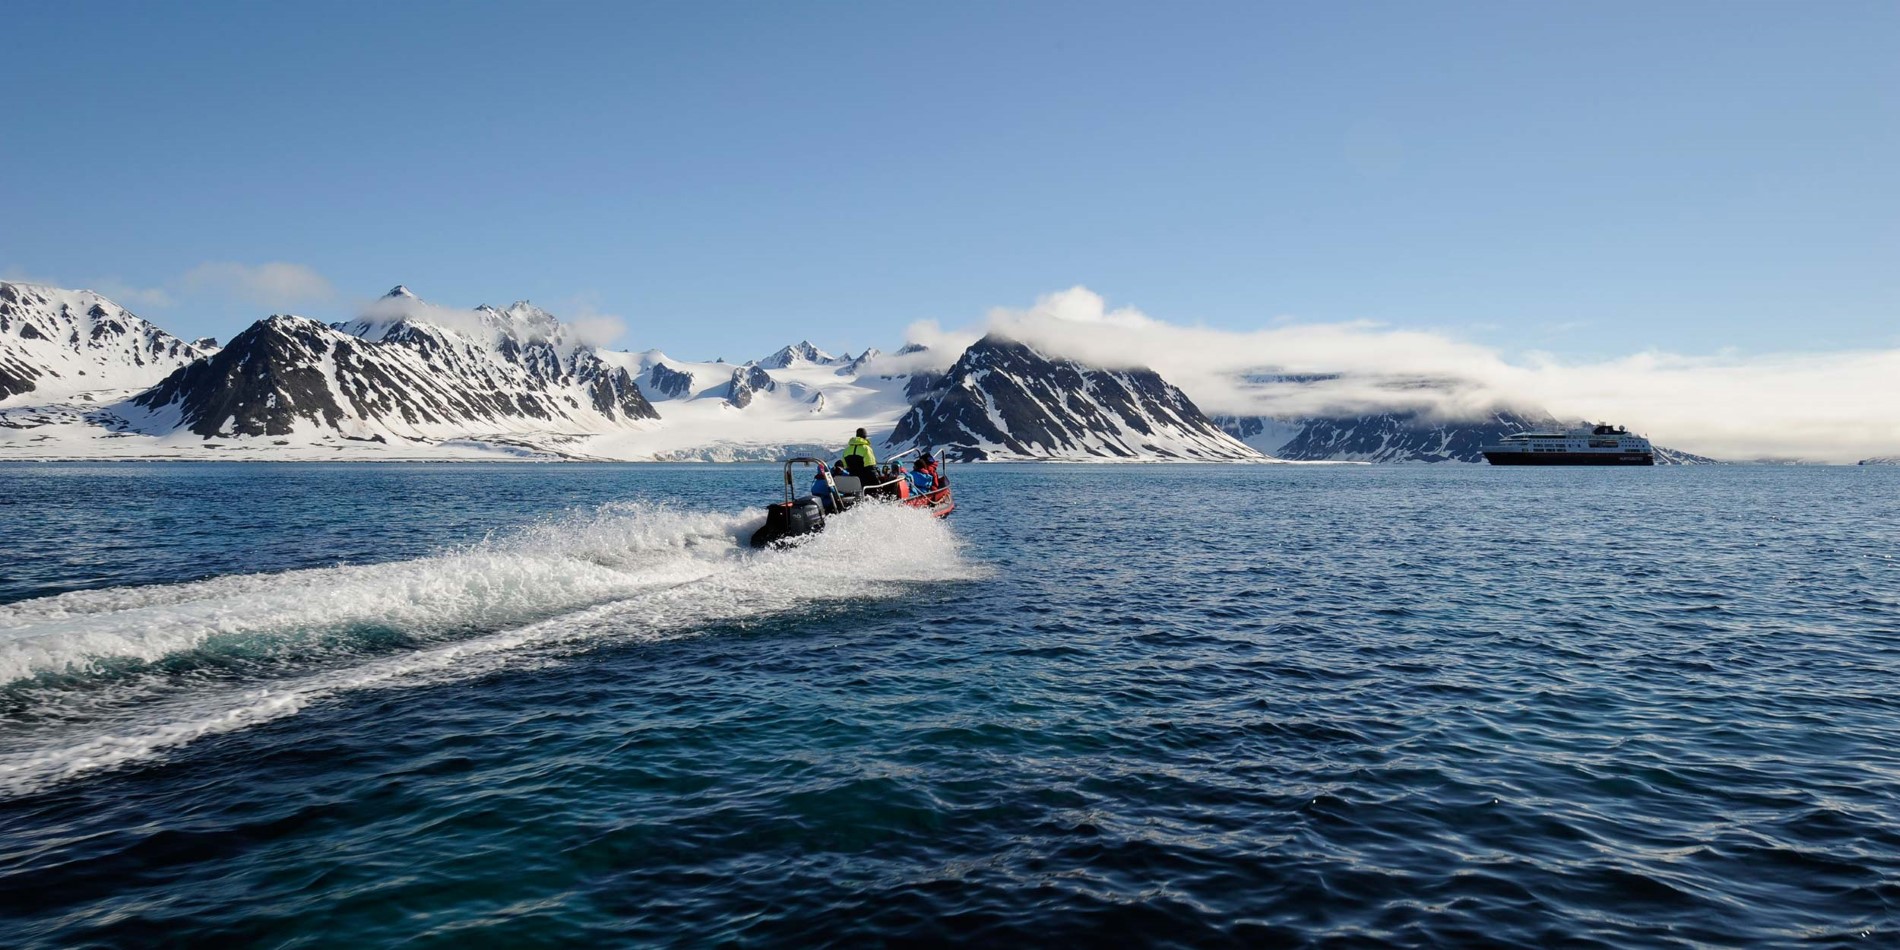 Nous utilisons nos bateaux pneumatiques polaires pour naviguer dans les fjords et se rapprocher de la faune